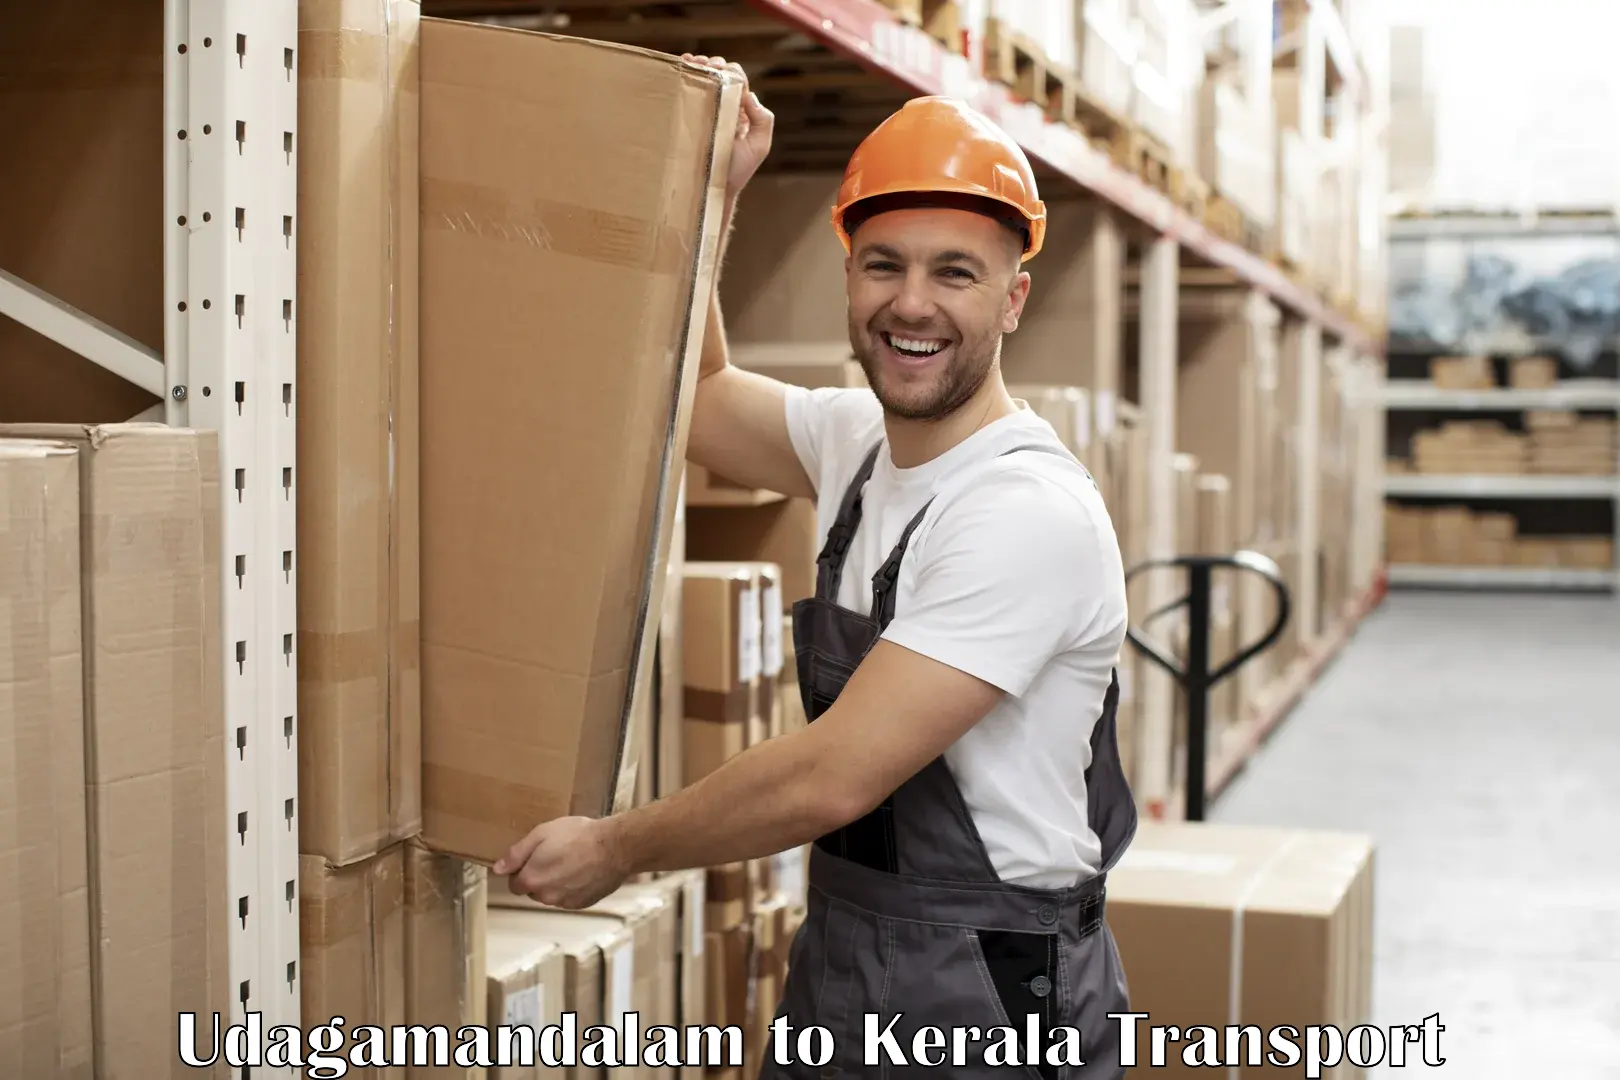 Logistics transportation services Udagamandalam to Kuchi